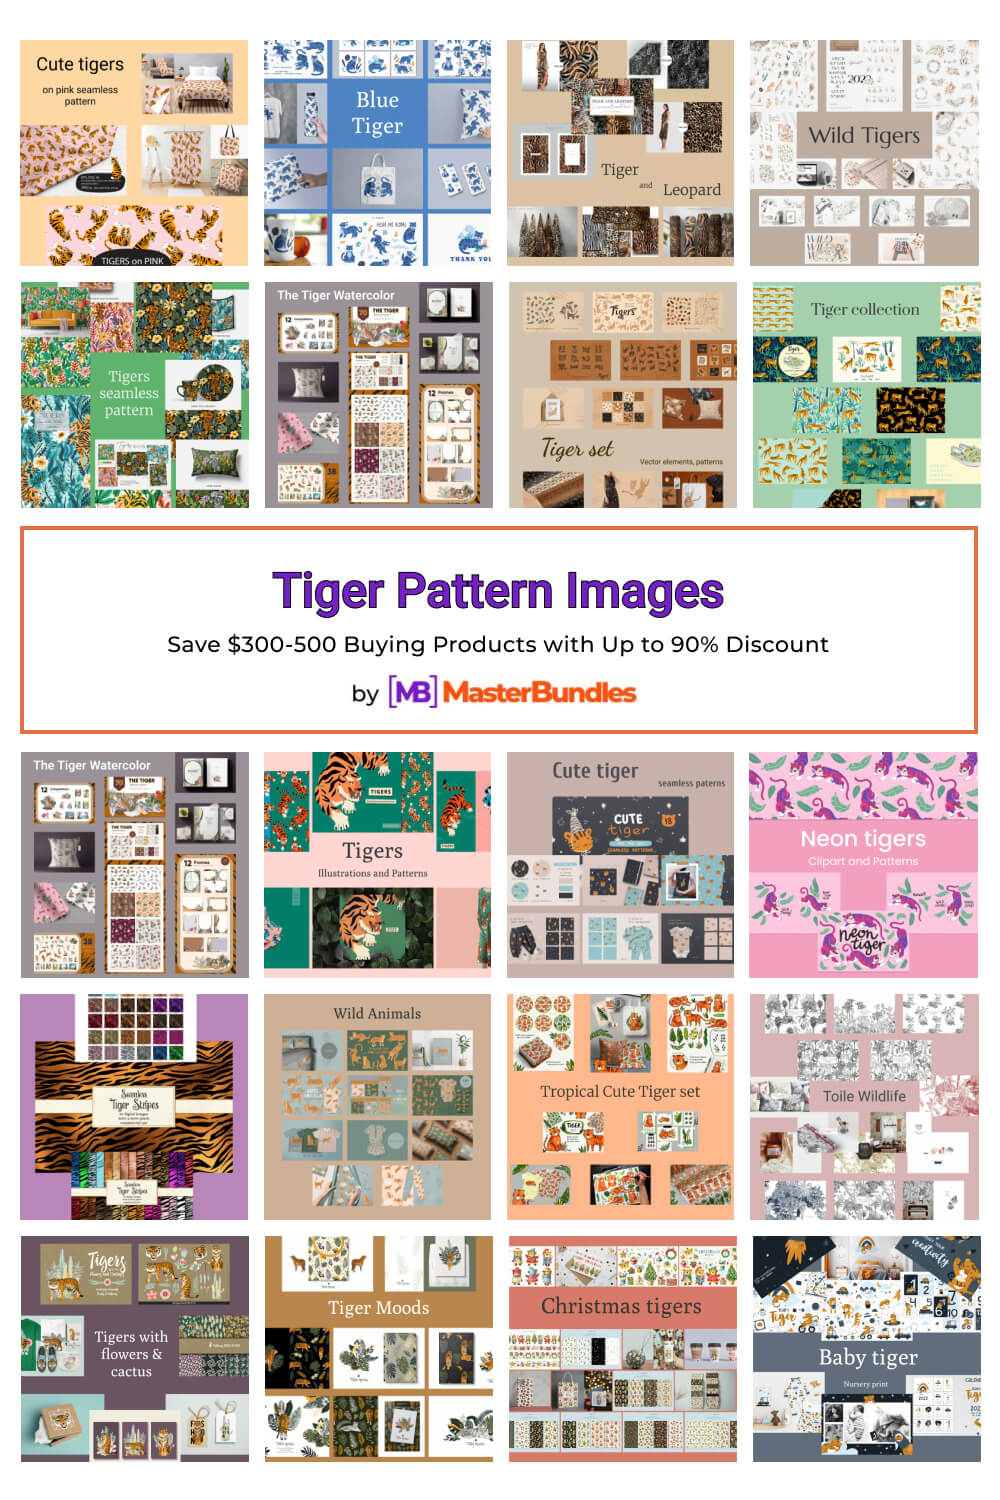 tiger pattern images pinterest image.